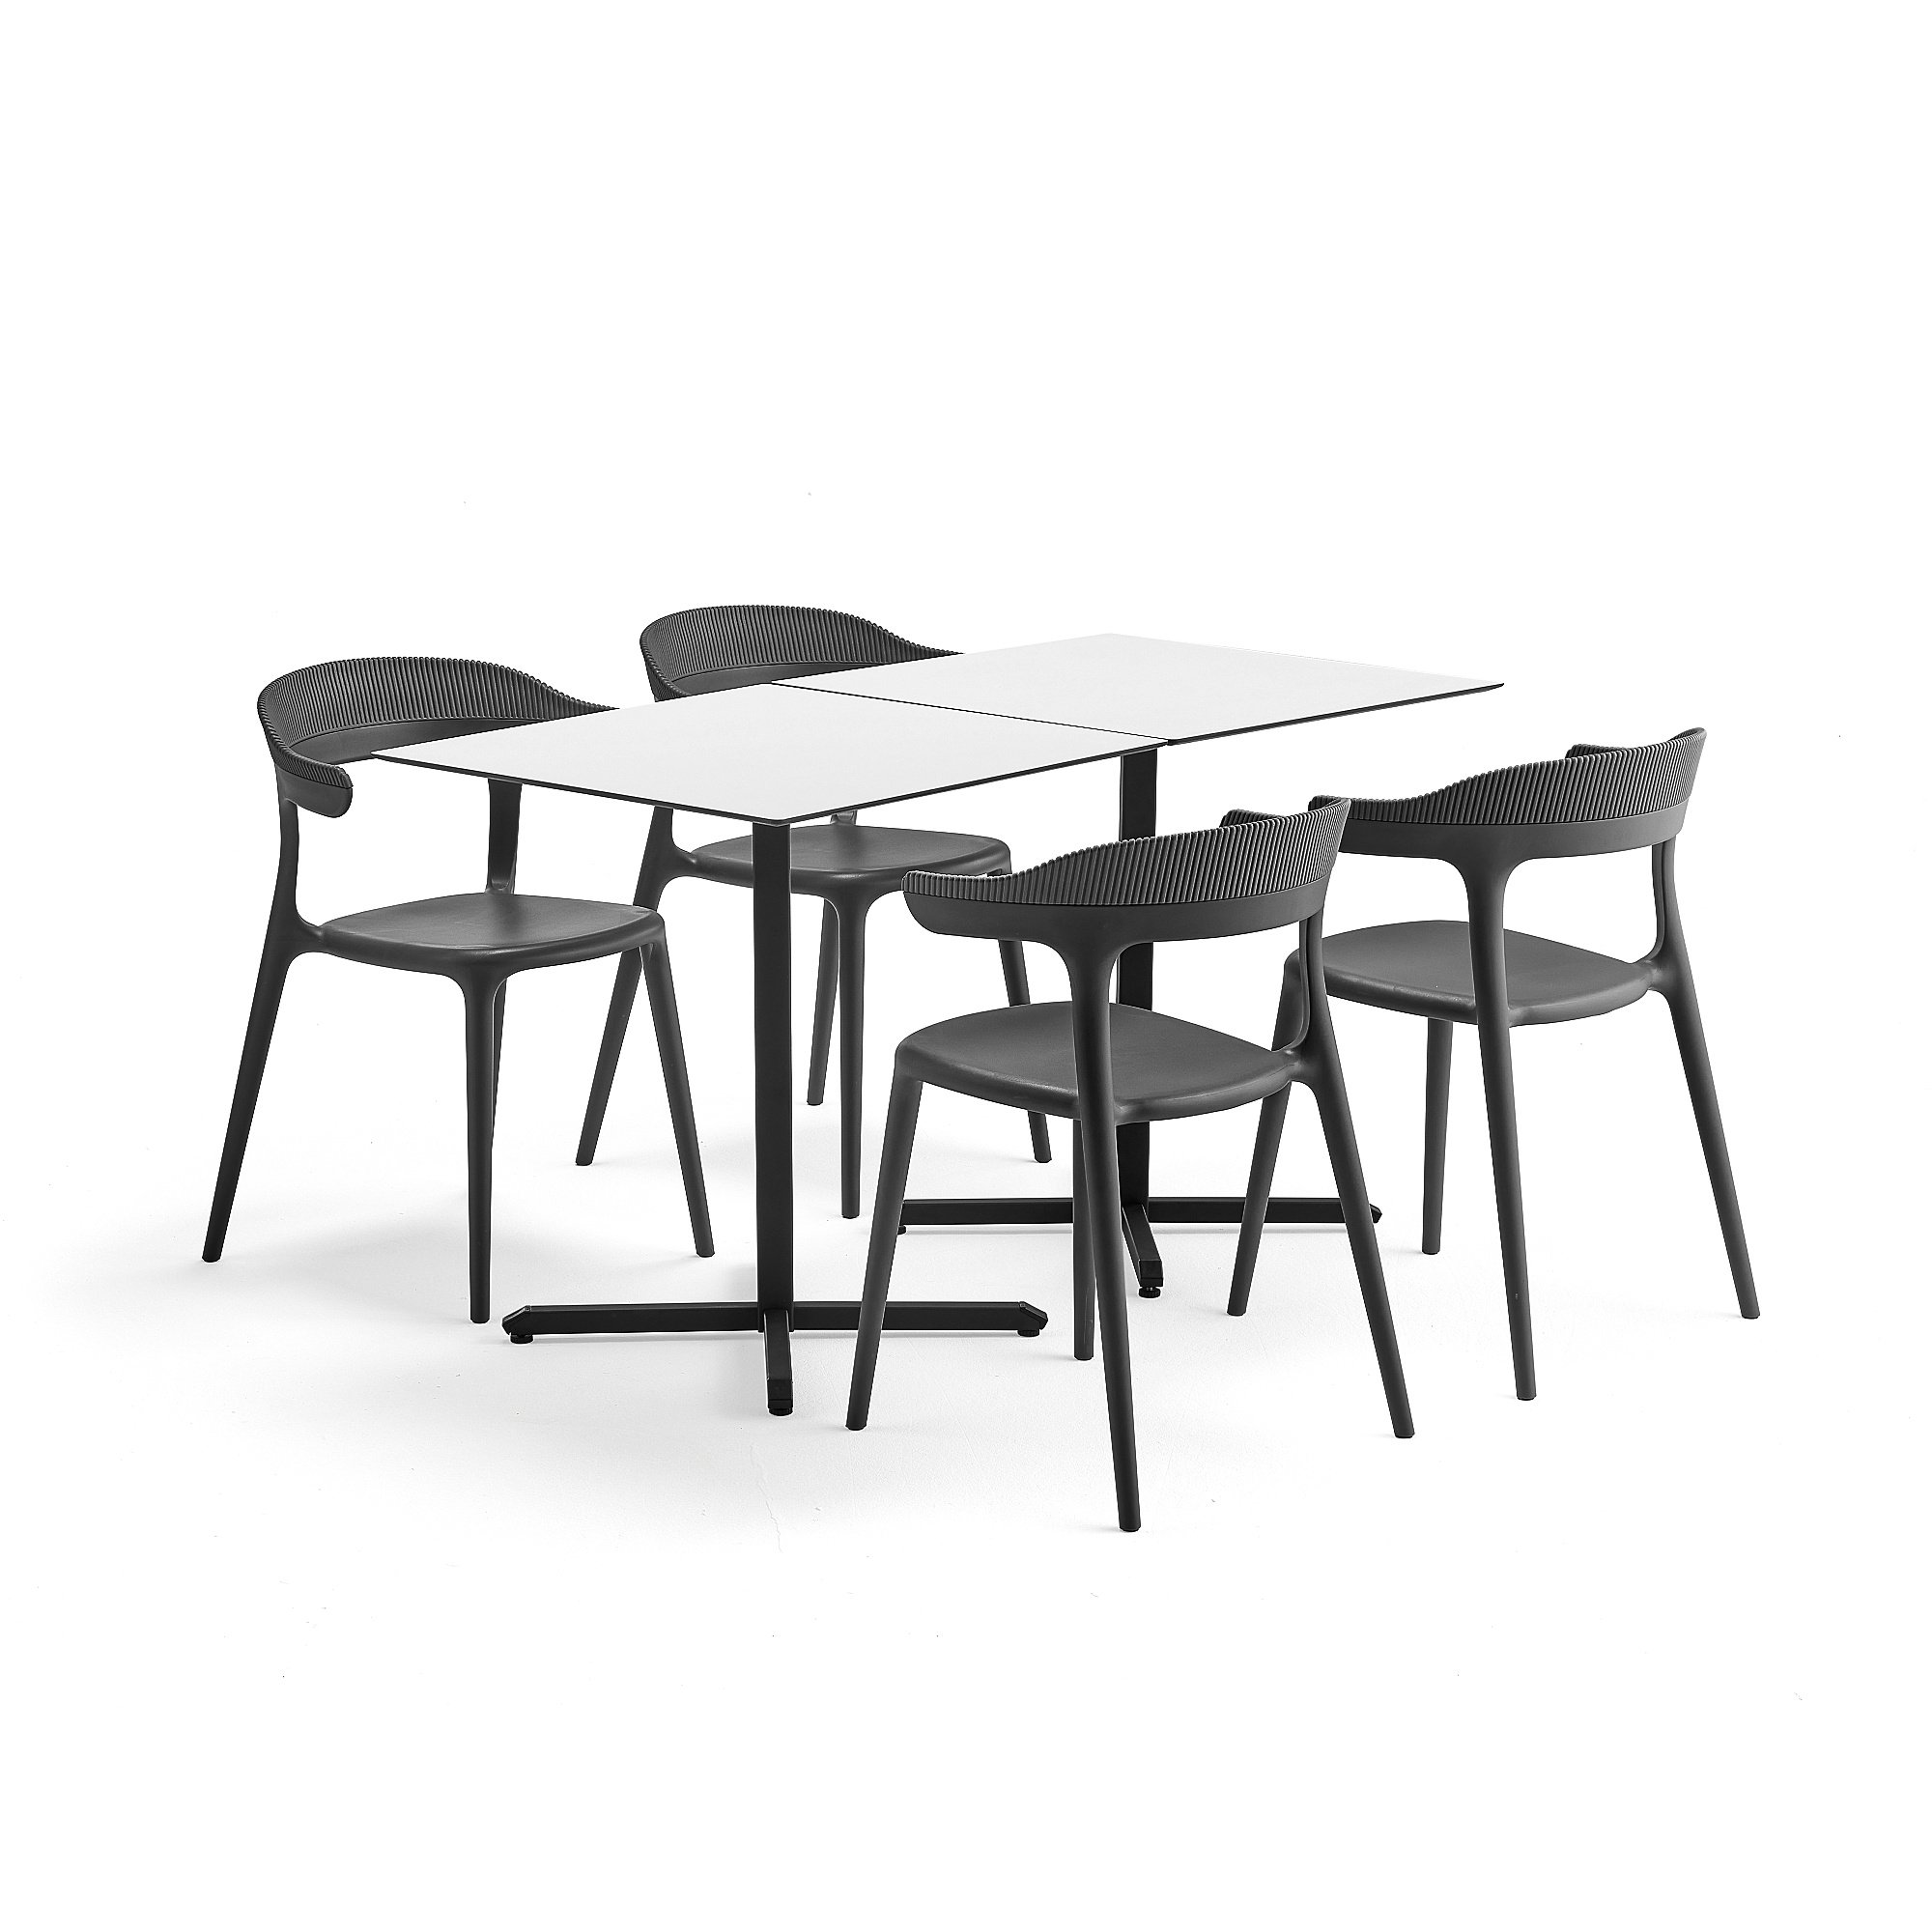 Jídelní set Becky + Creek, 2 stoly a 4 antracitově šedé židle